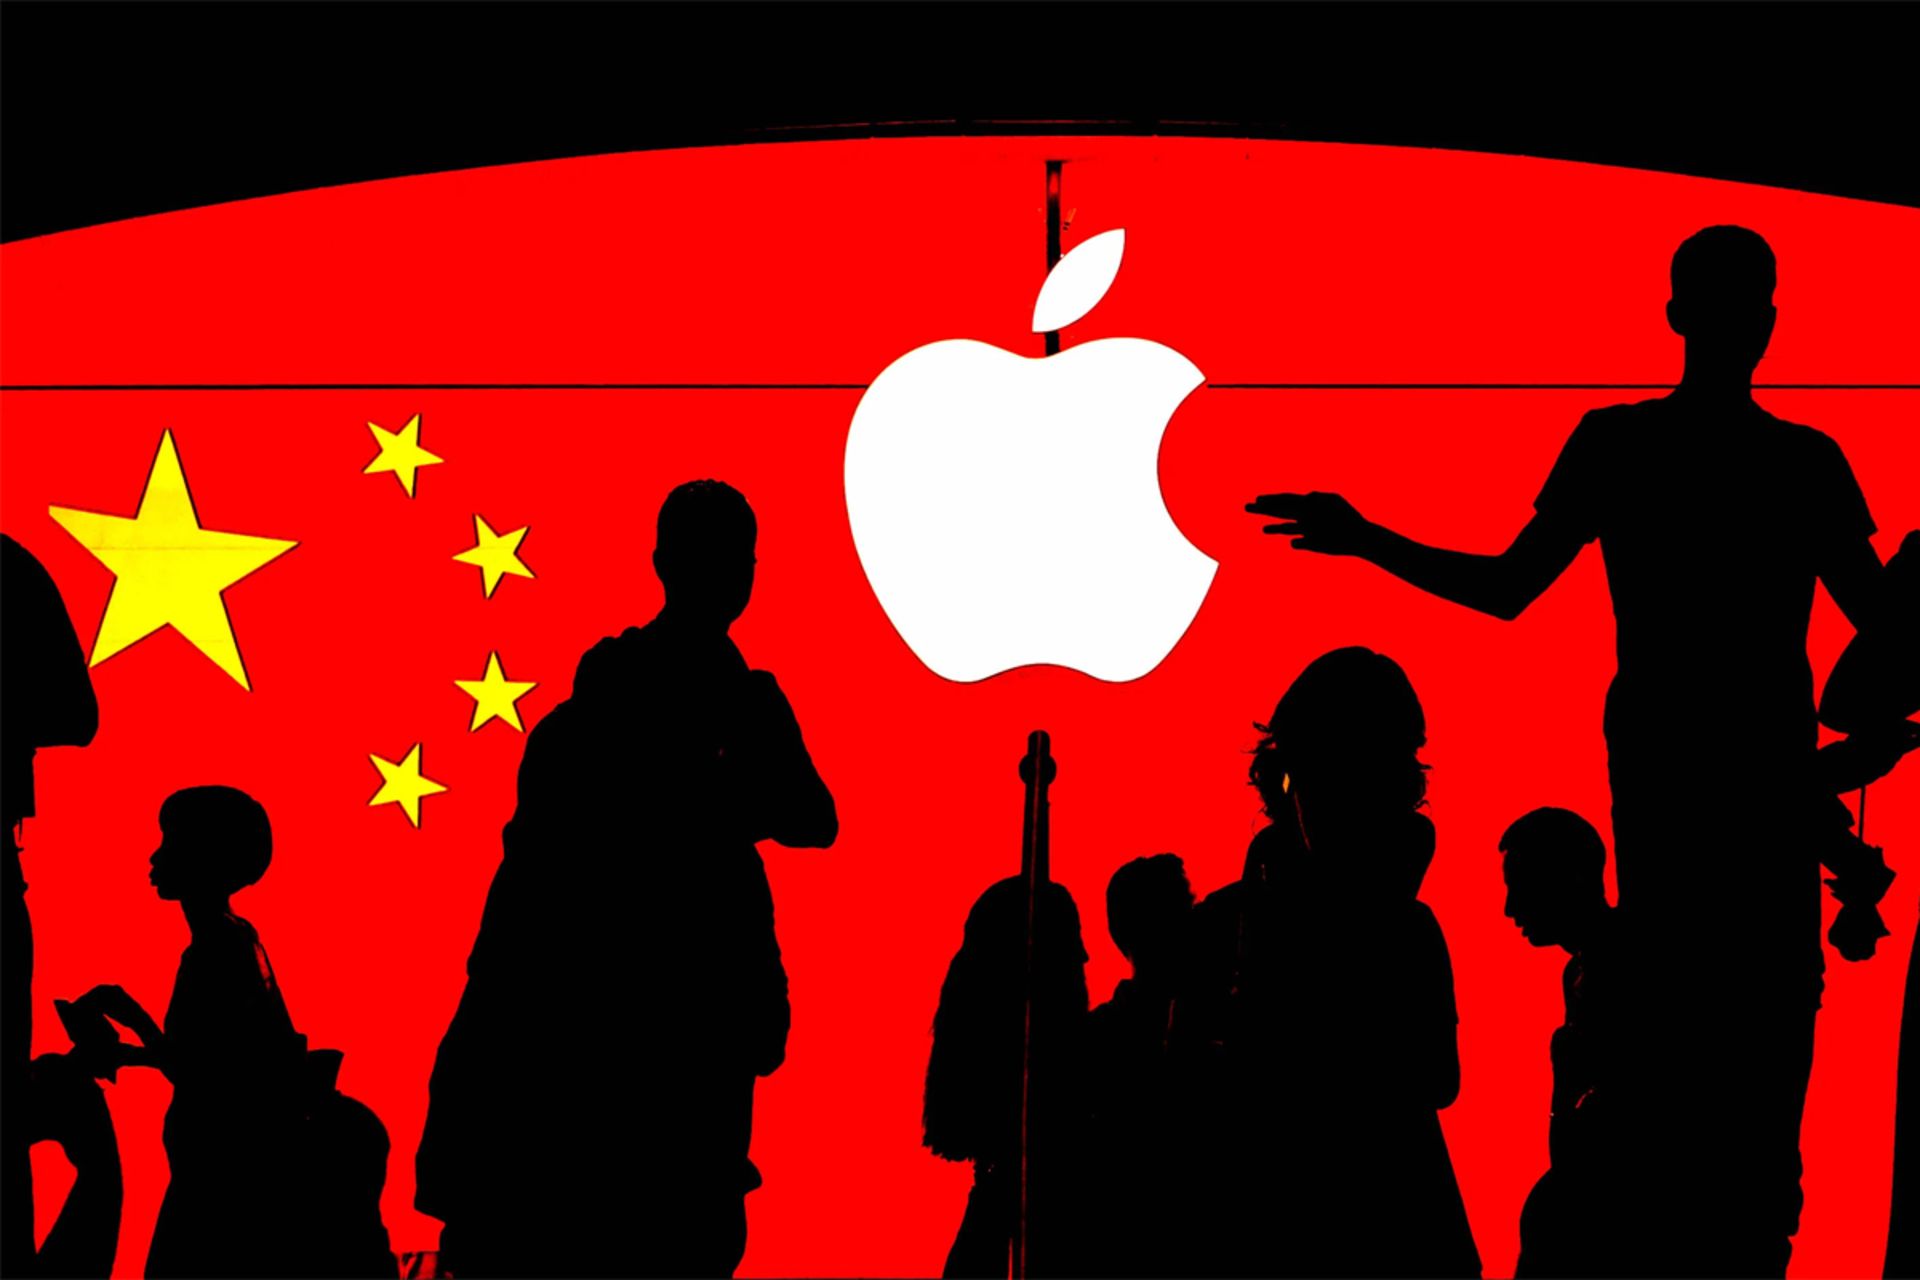 لوگو اپل / Apple درکنار پرچم چین در پشت افراد تاریک